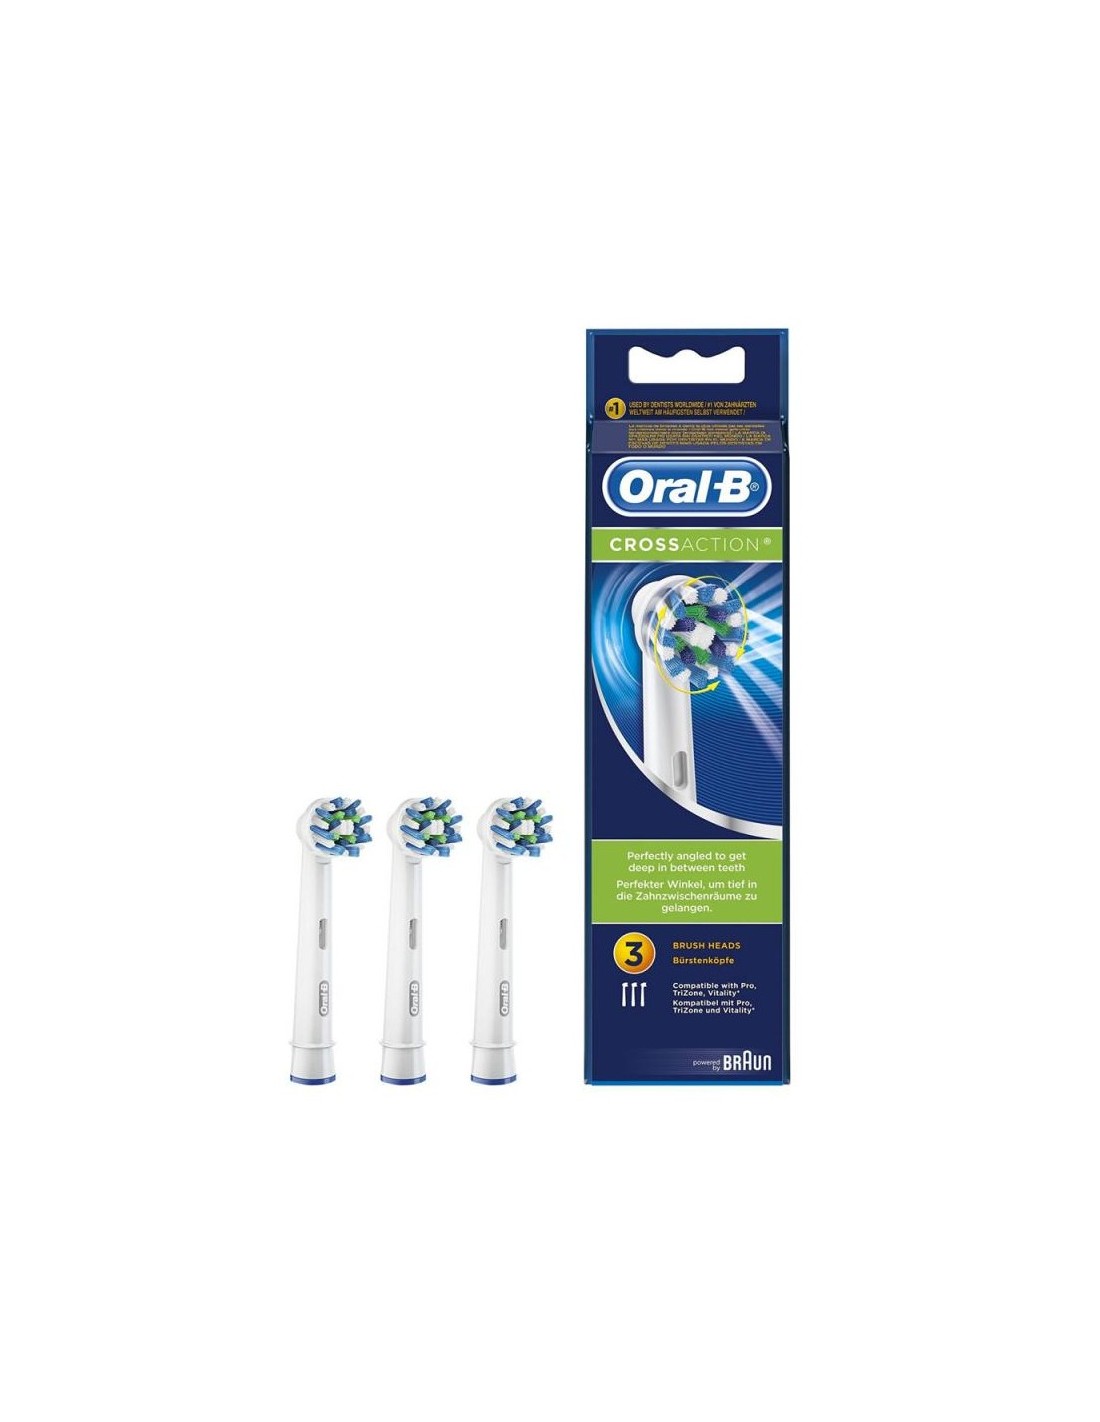 ORAL-B Cepillo Eléctrico Pack Densify Limpieza Profesional 3